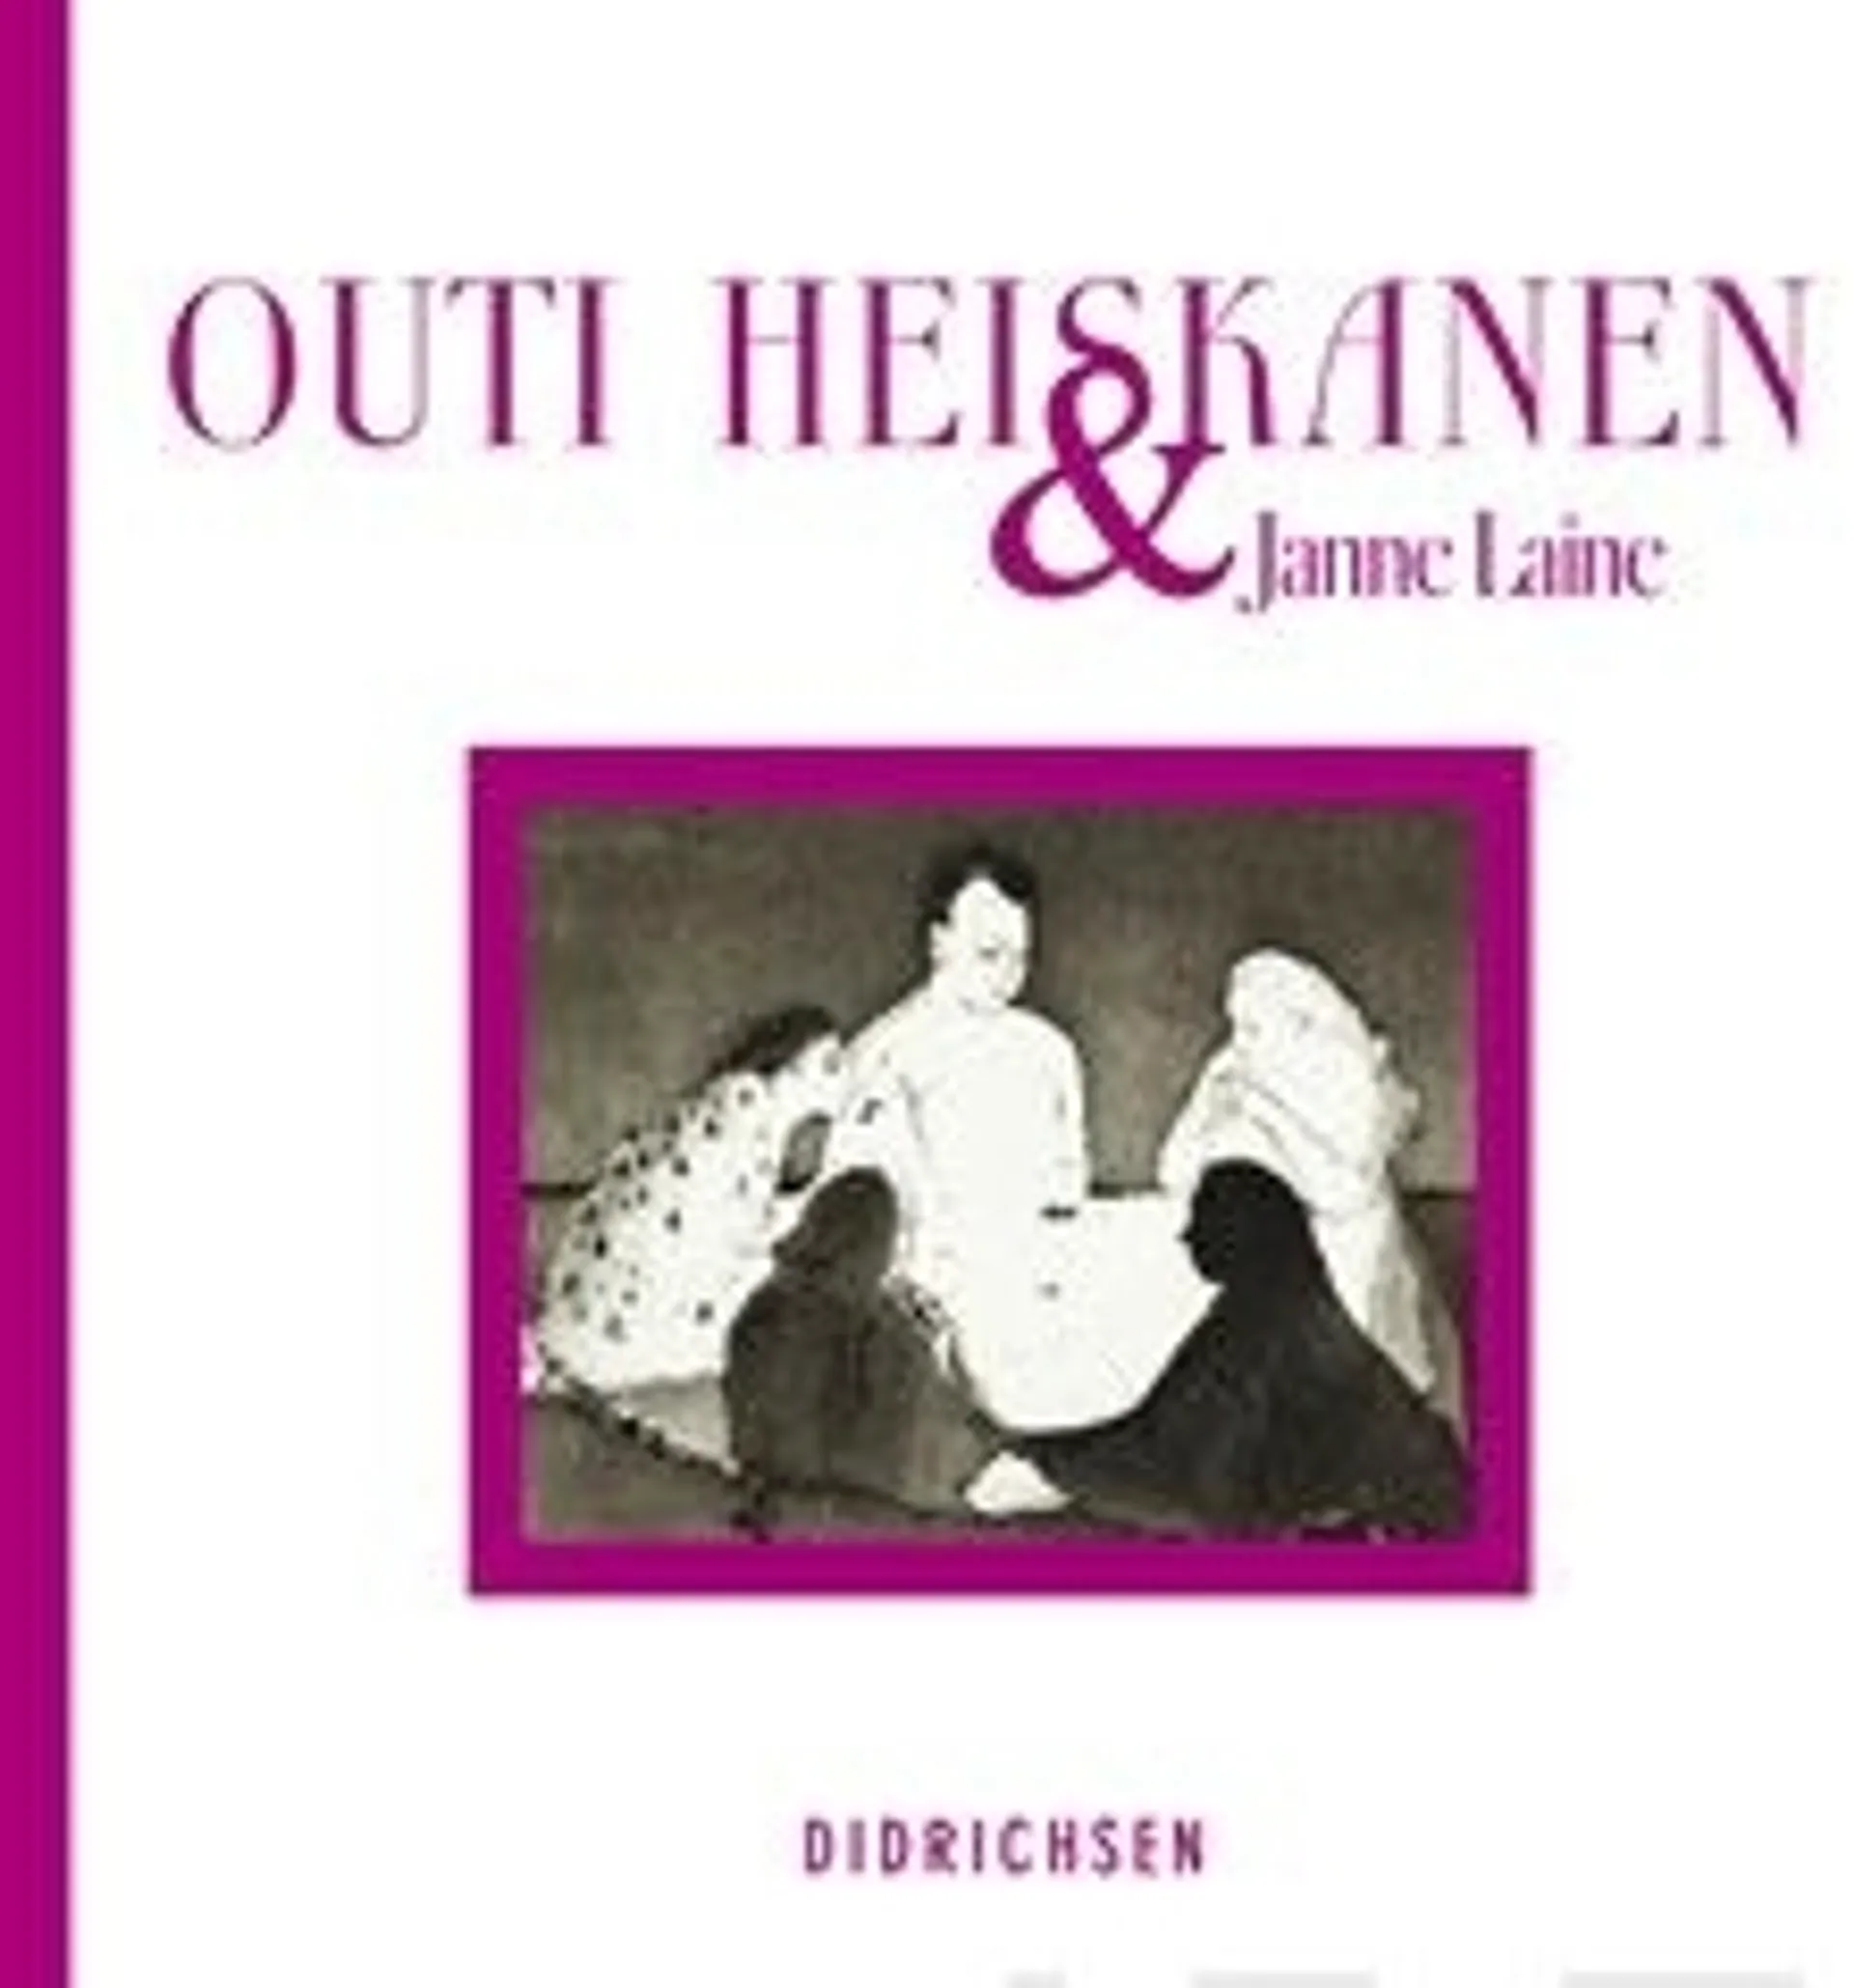 Outi Heiskanen & Janne Laine